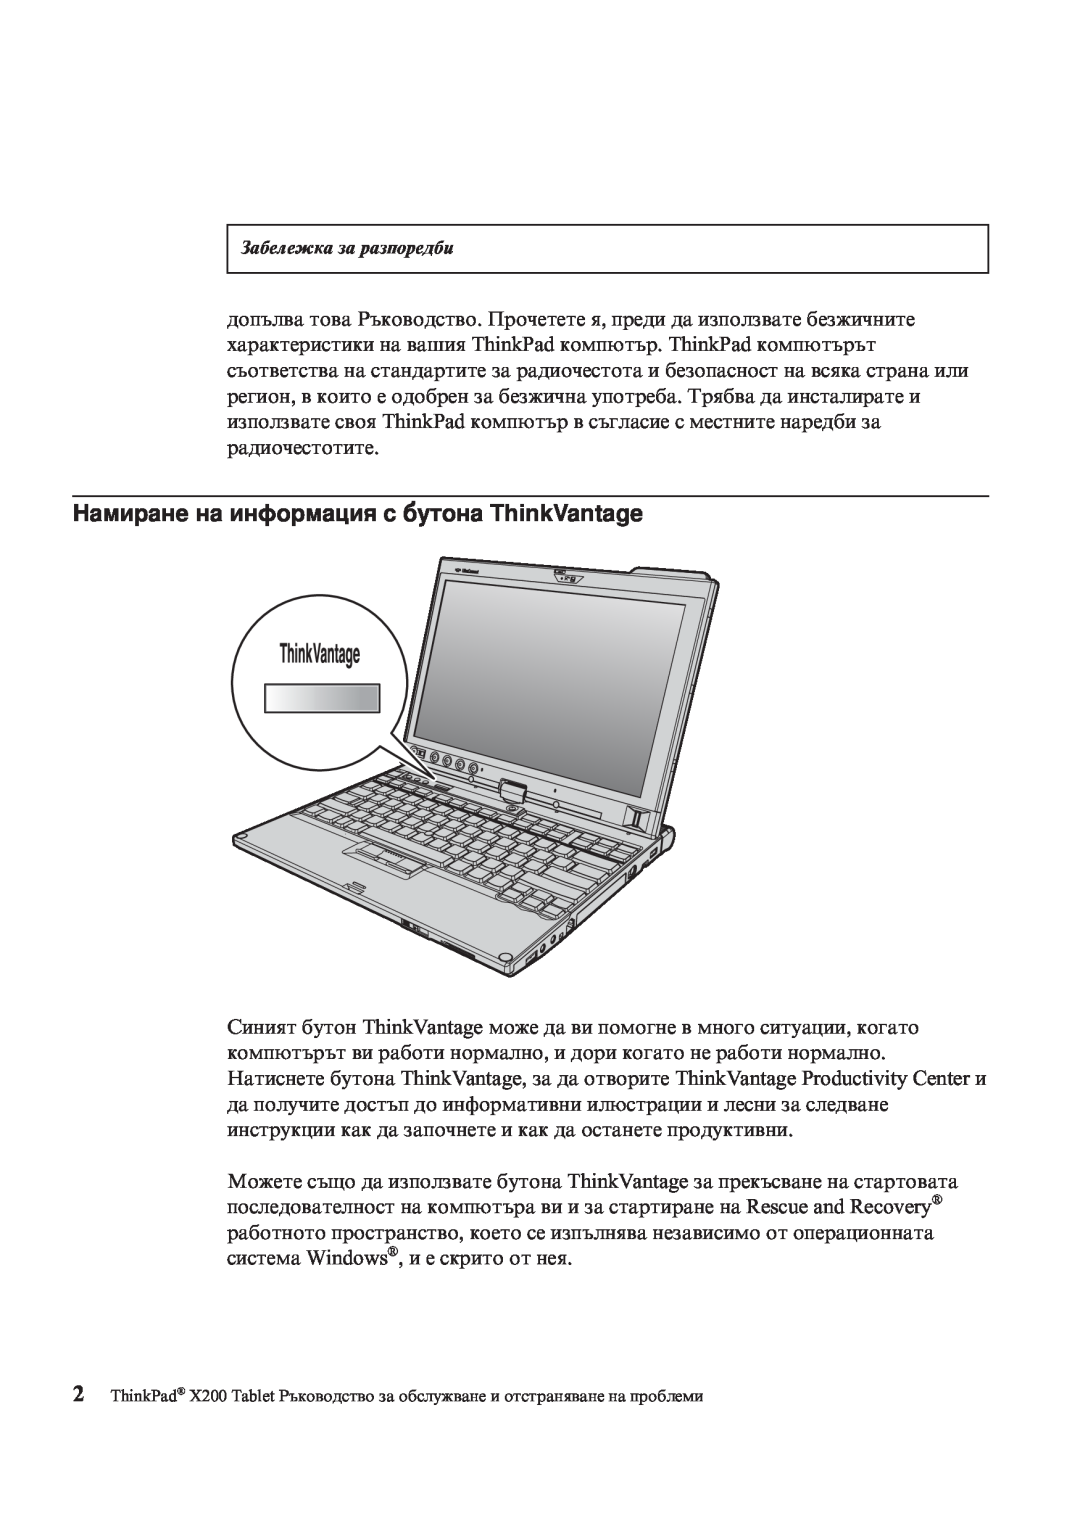 Lenovo X200 manual Намиране на информация с бутона ThinkVantage, Забележка за разпоредби 